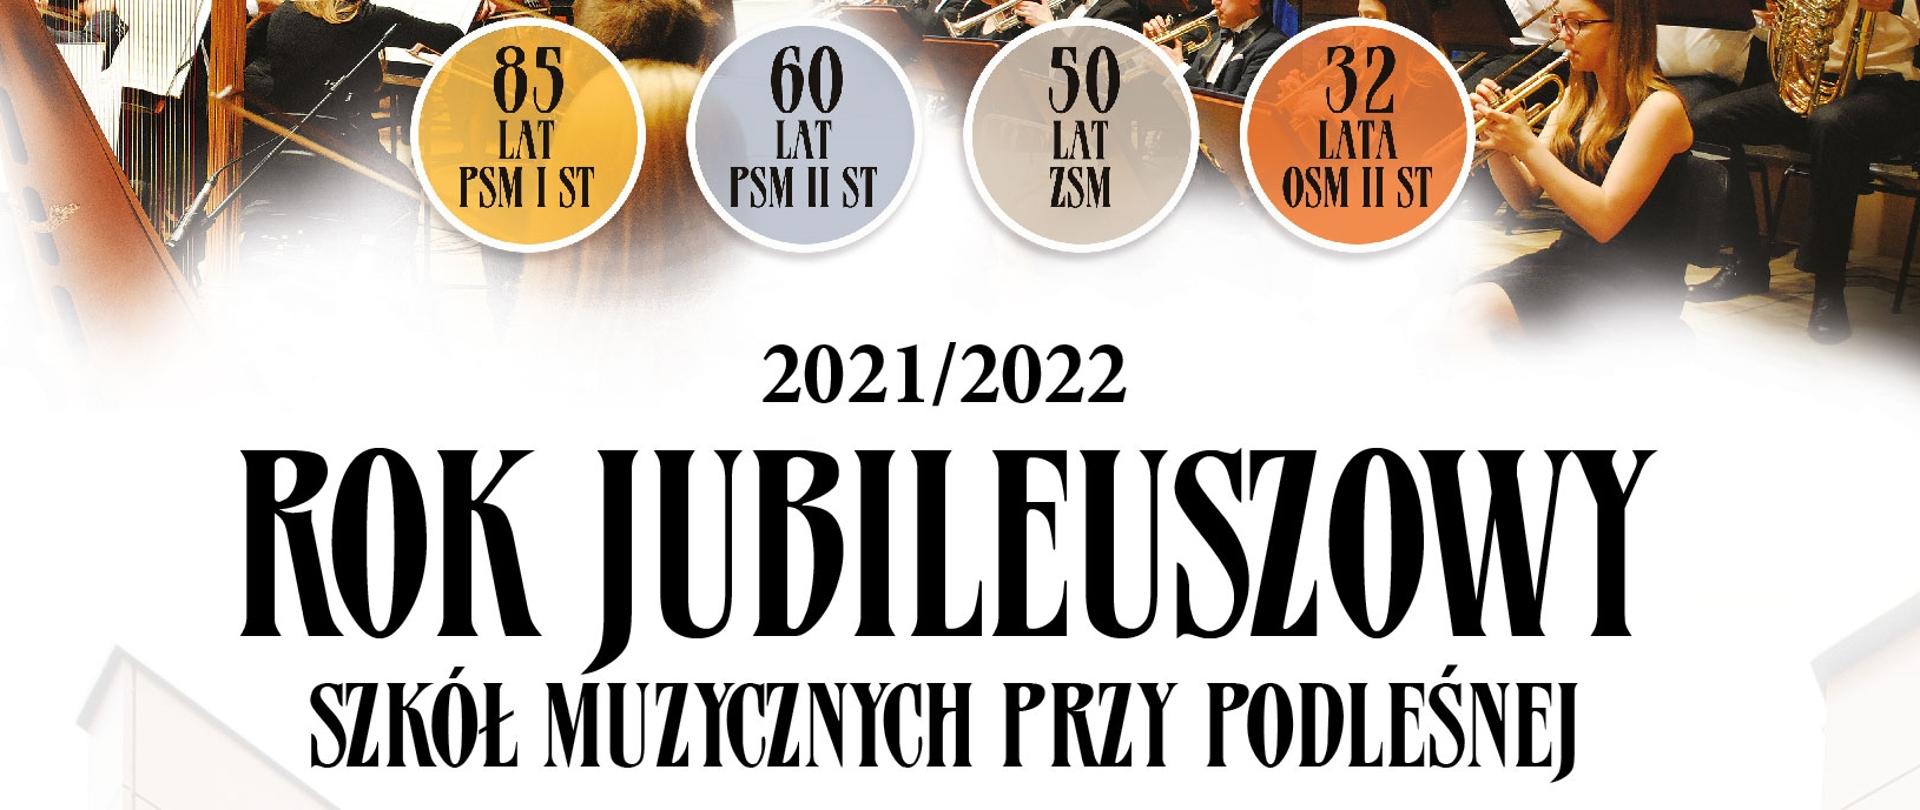 baner z napisem rok jubileuszowy szkół muzycznych przy podleśnej